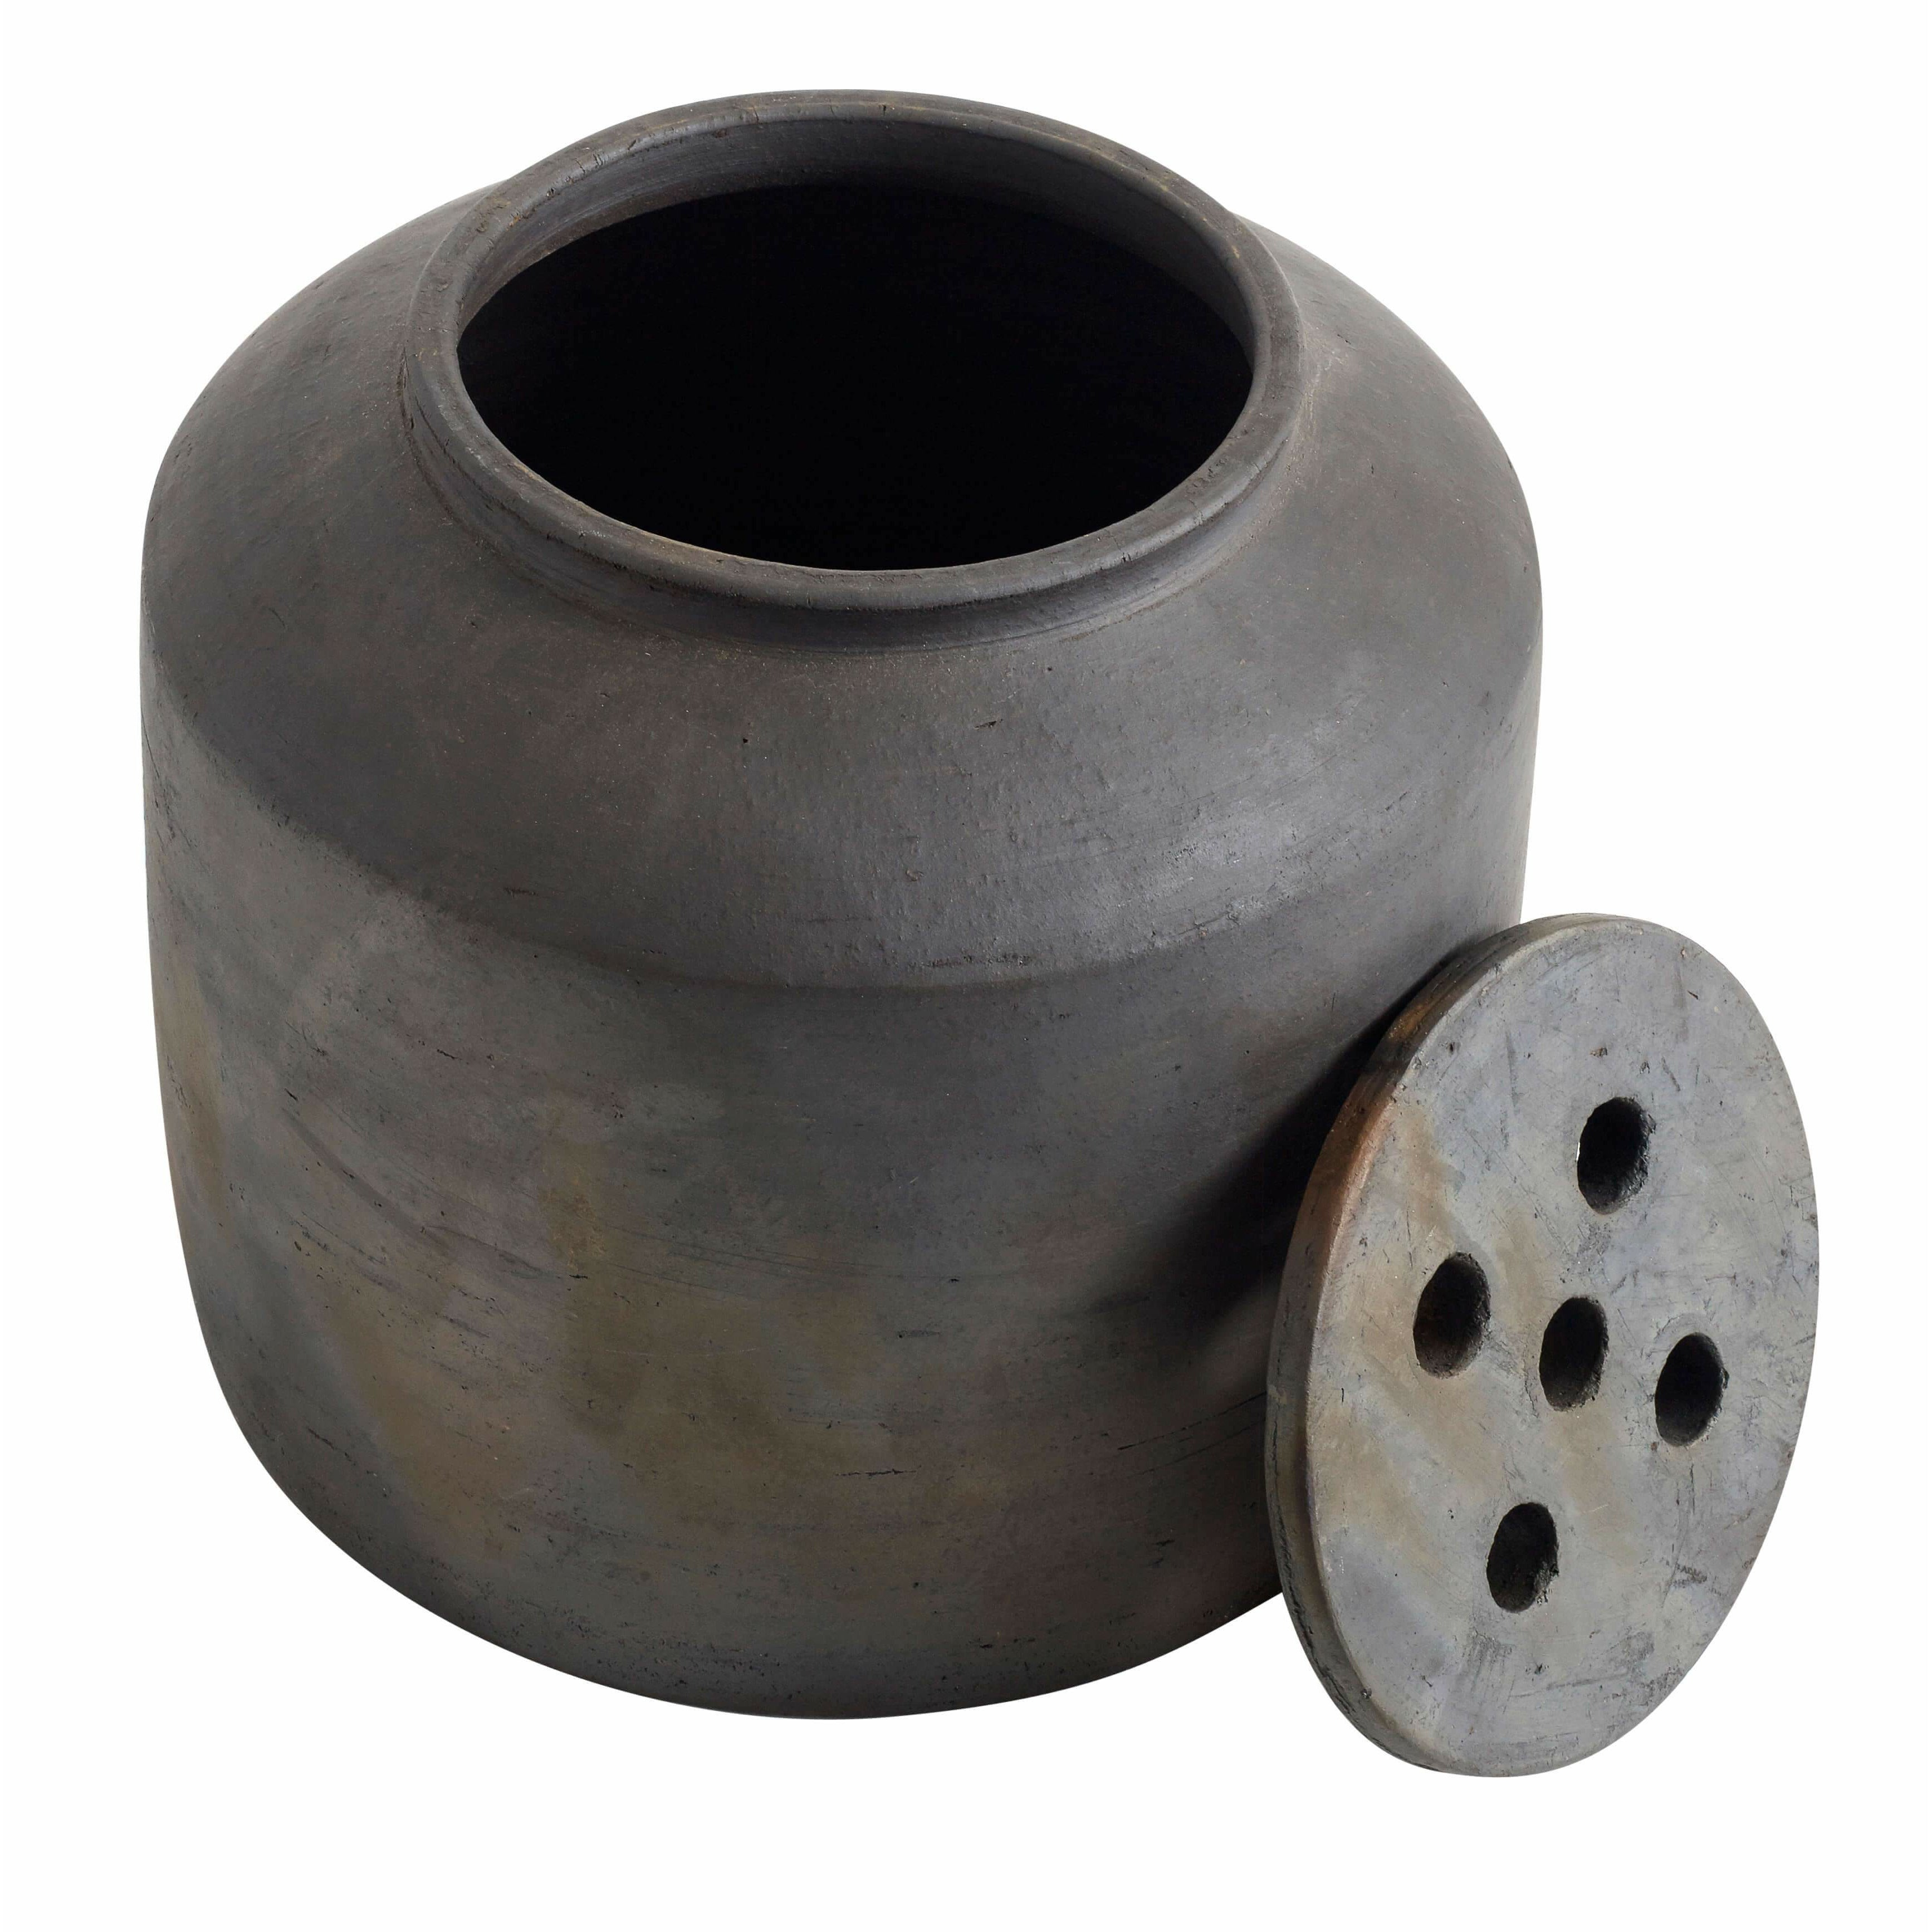 Muubs Pot noisetier avec couvercle brun / noir, Ø25 cm